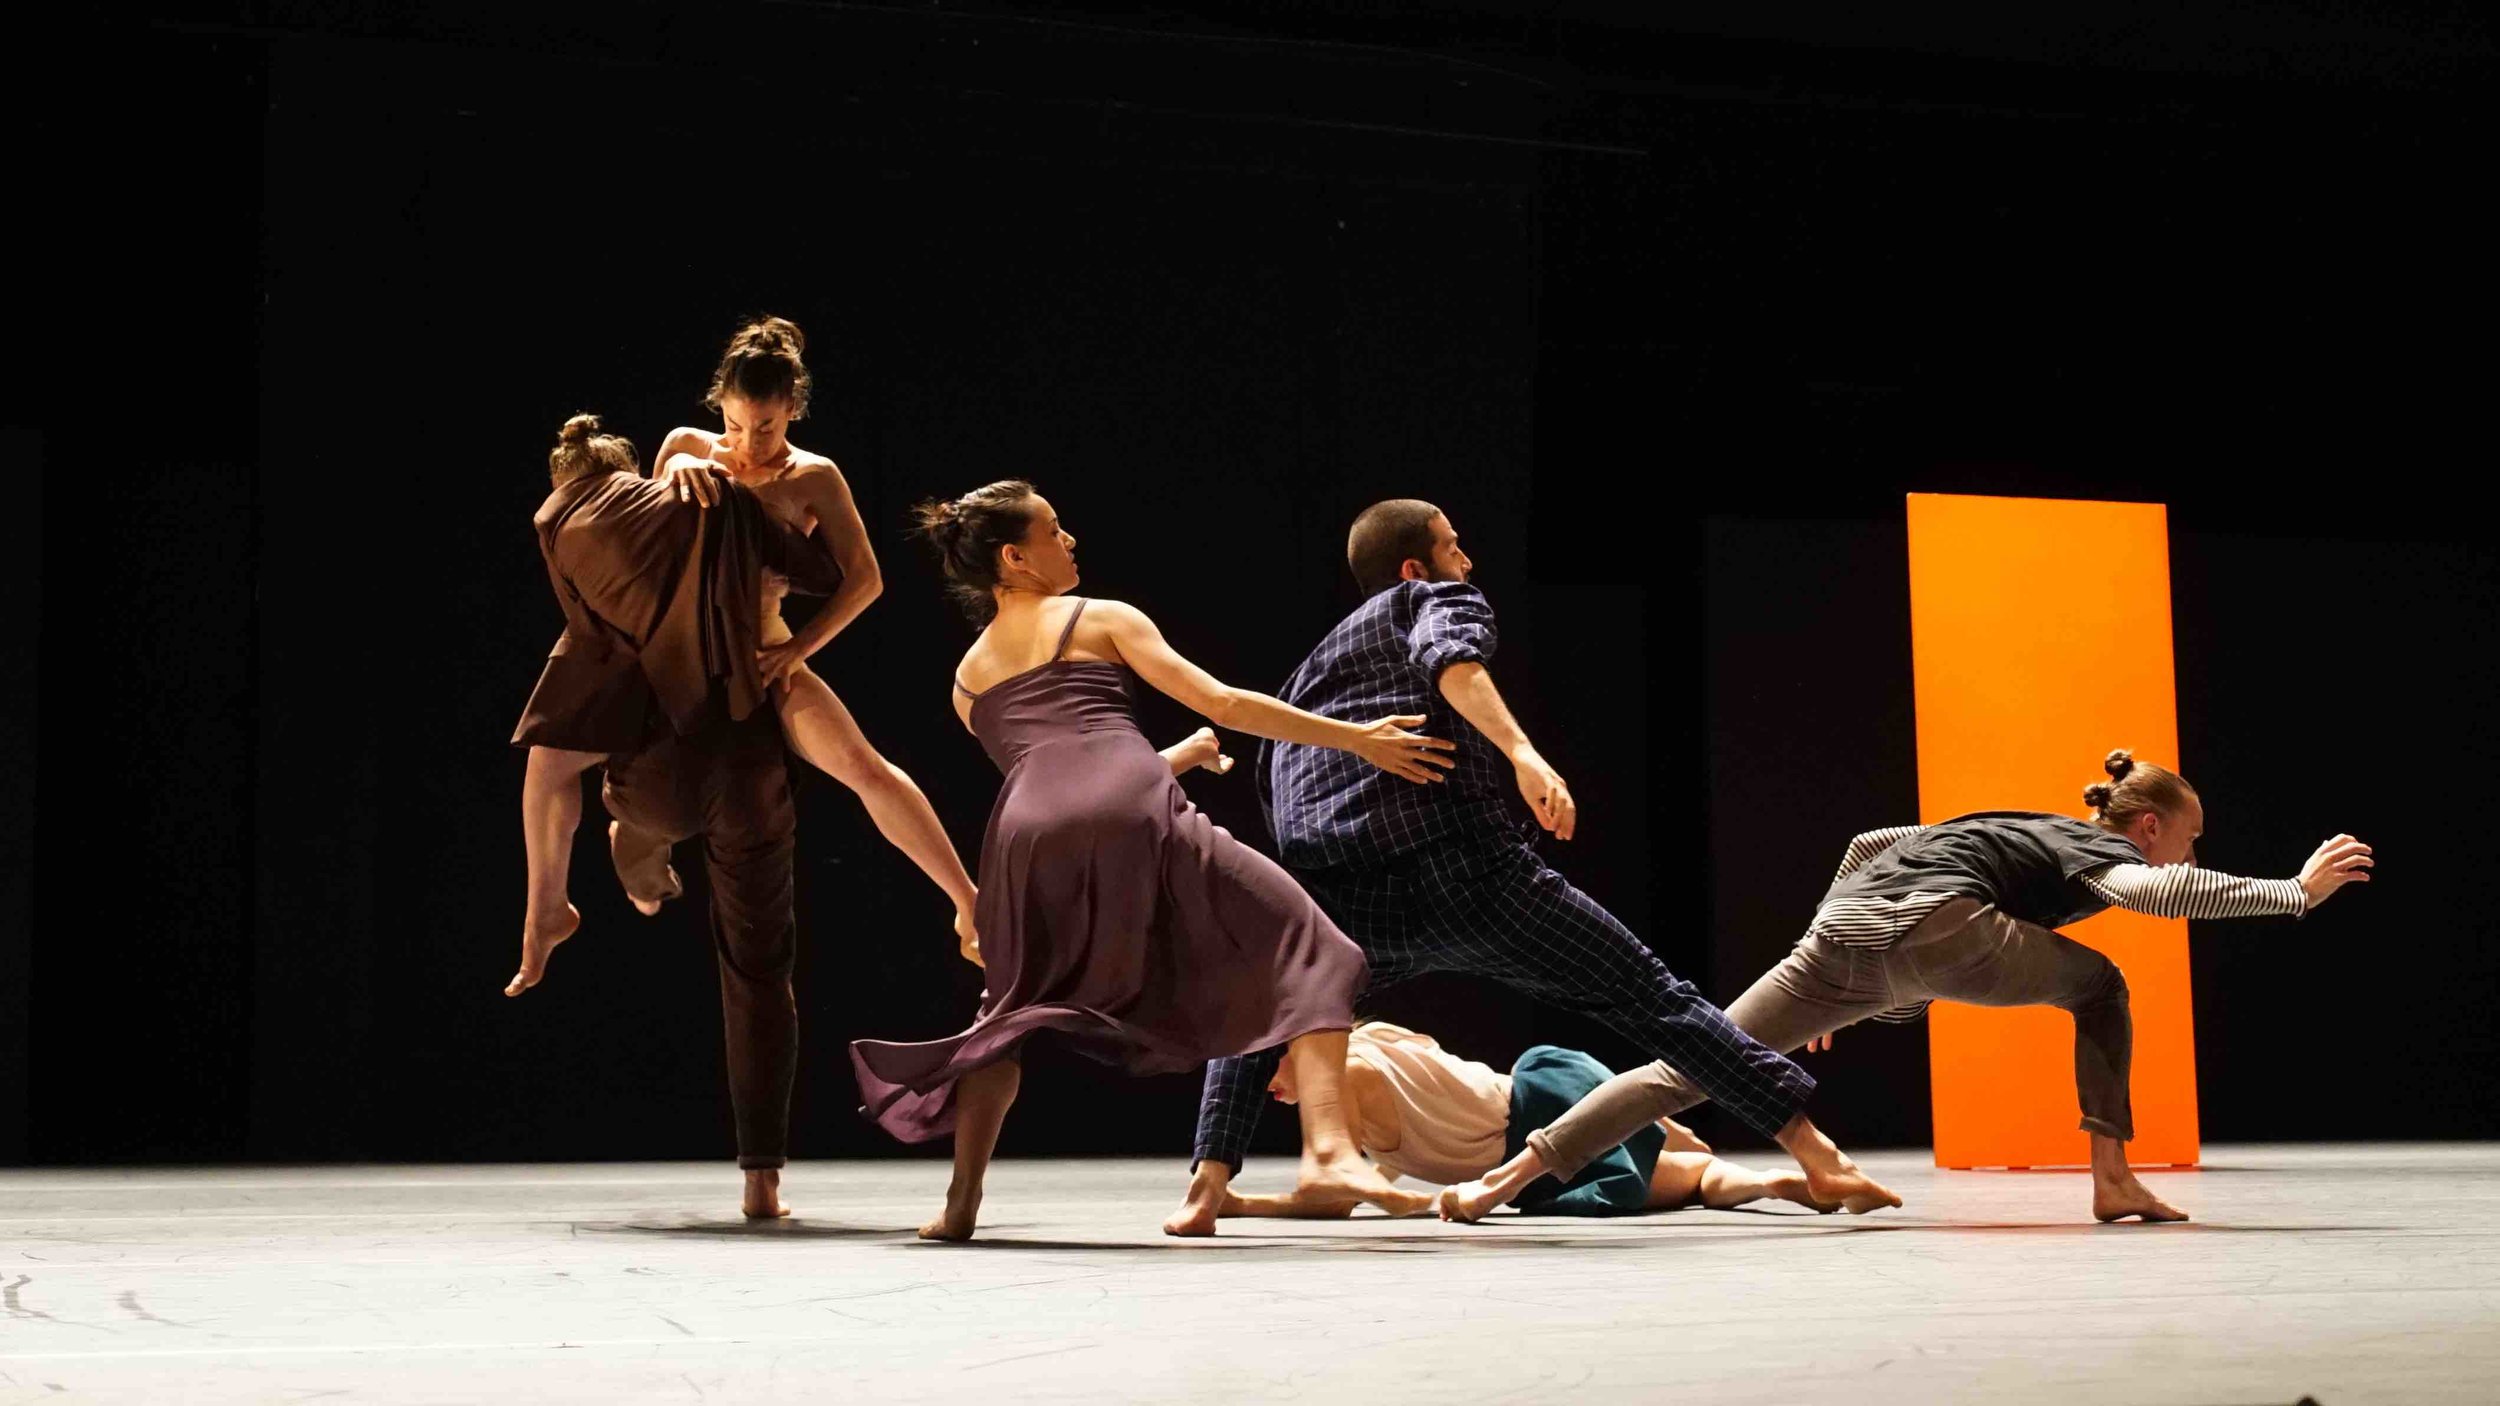 Ohad Naharin's "Yag". Photo by Gadi Dagon, courtesy Batsheva Dance Company